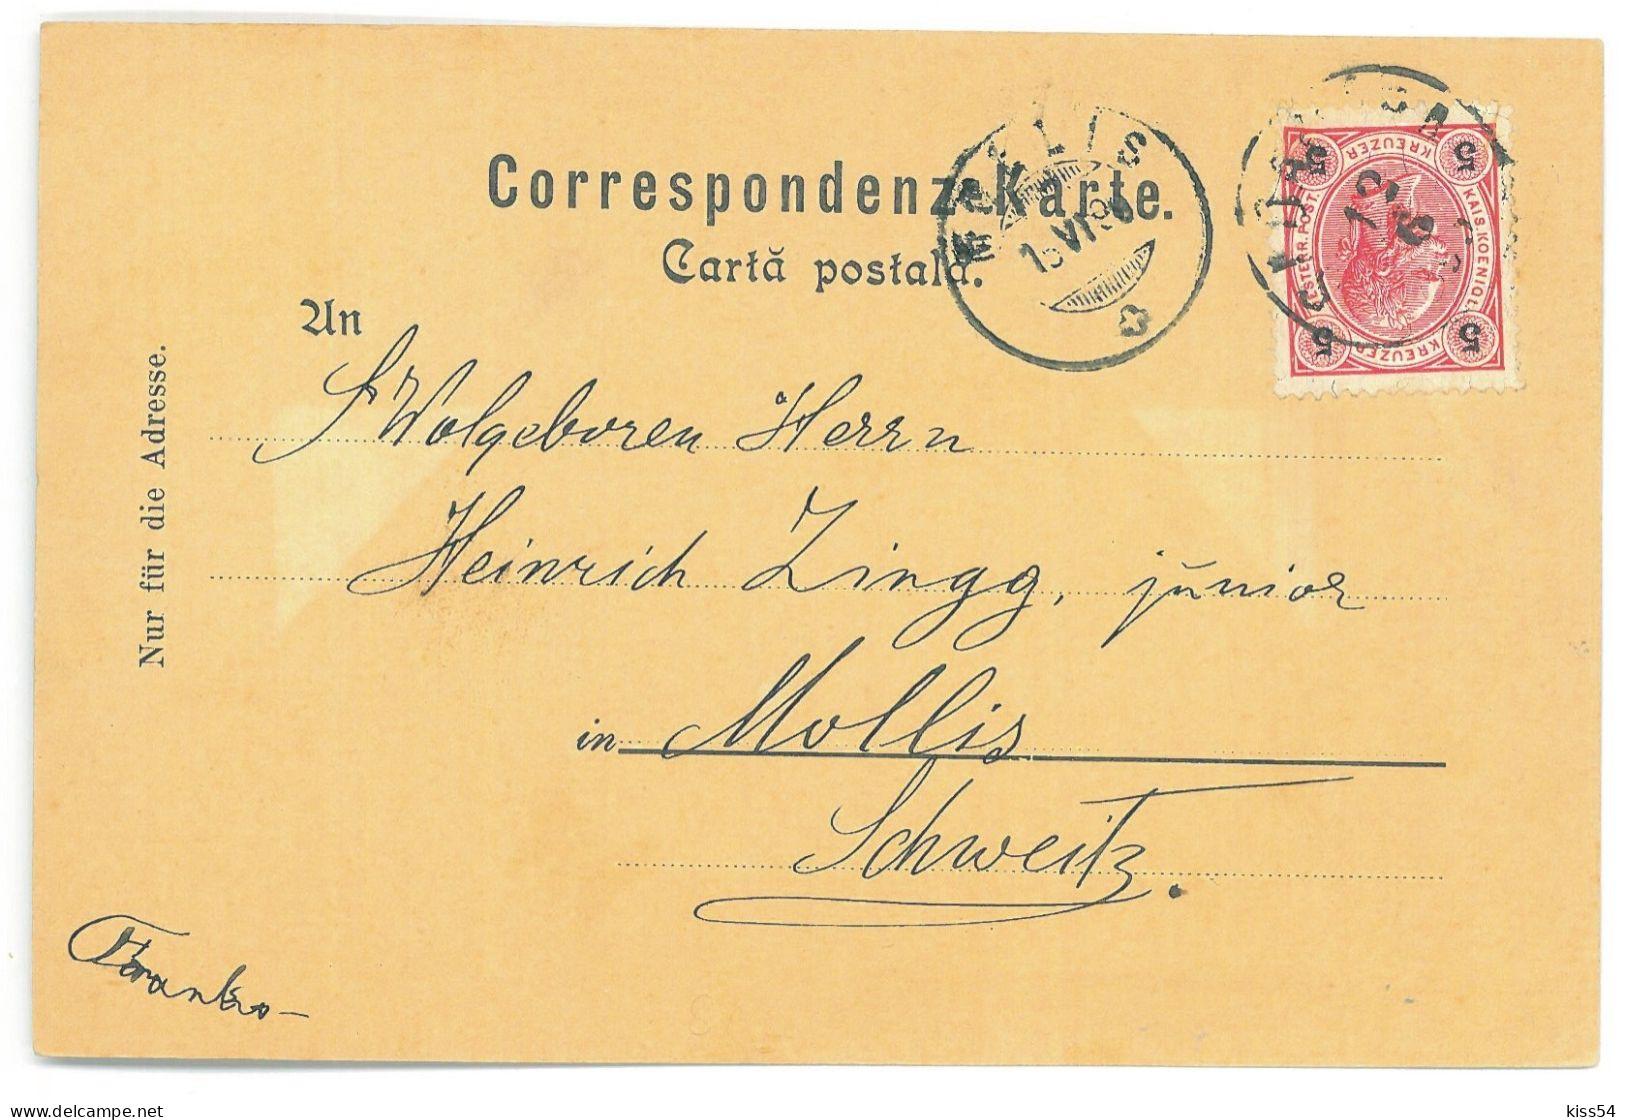 RO - 25327 SADAGURA, Bucovina, High School, Litho, Romania - Old Postcard - Used - 1898 - Rumänien